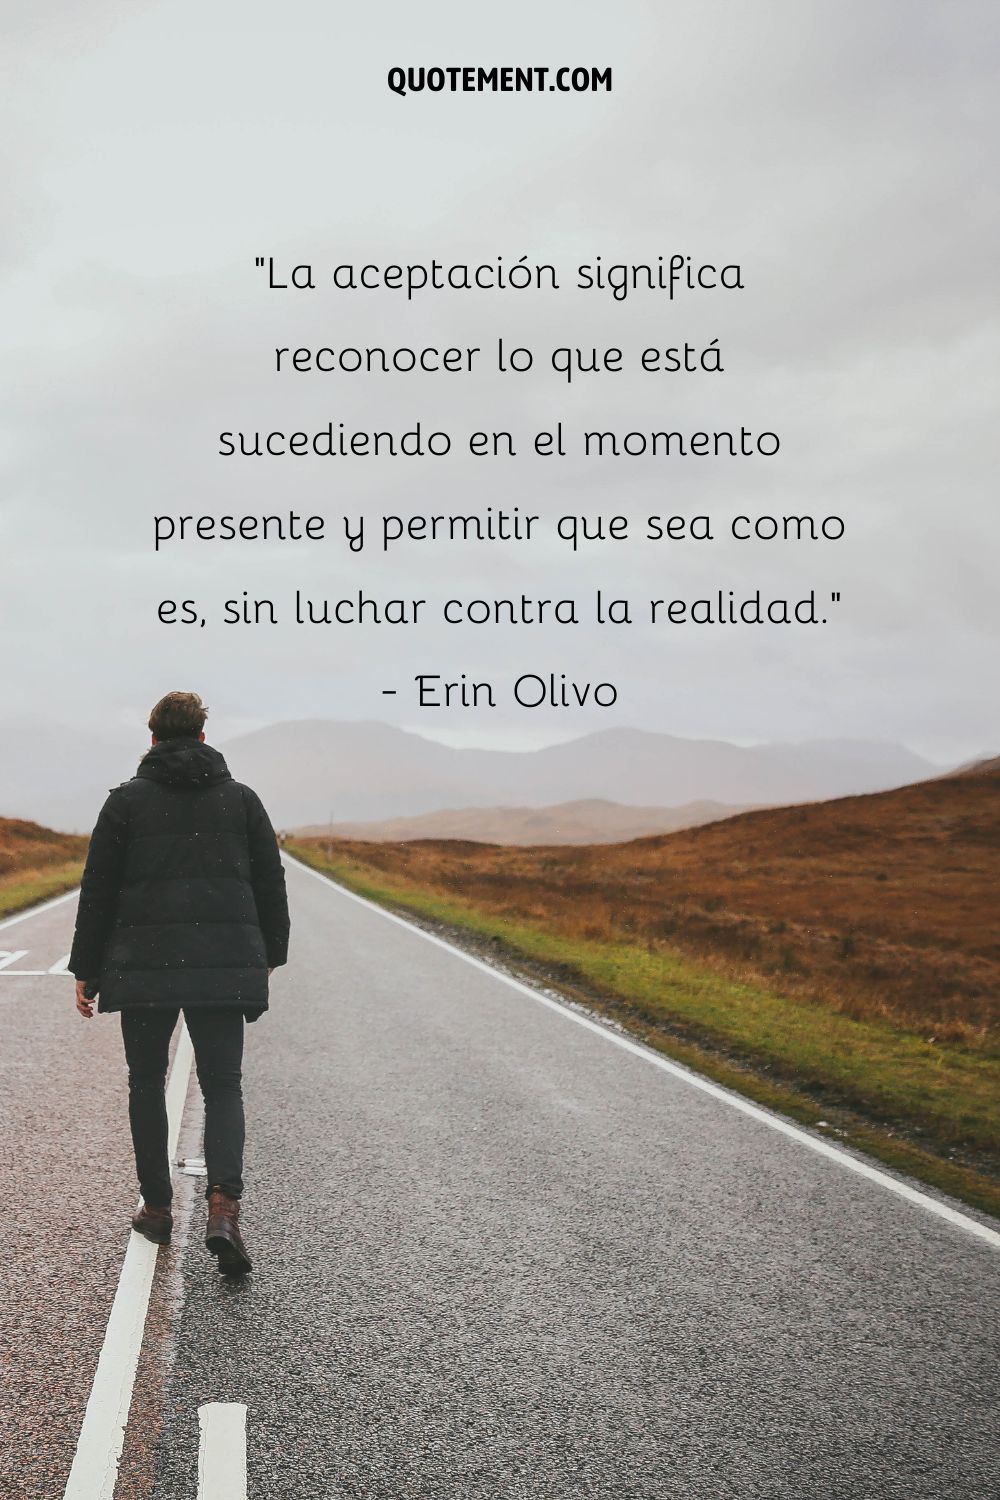 "La aceptación significa reconocer lo que está ocurriendo en el momento presente y permitir que sea como es, sin luchar contra la realidad". - Erin Olivo